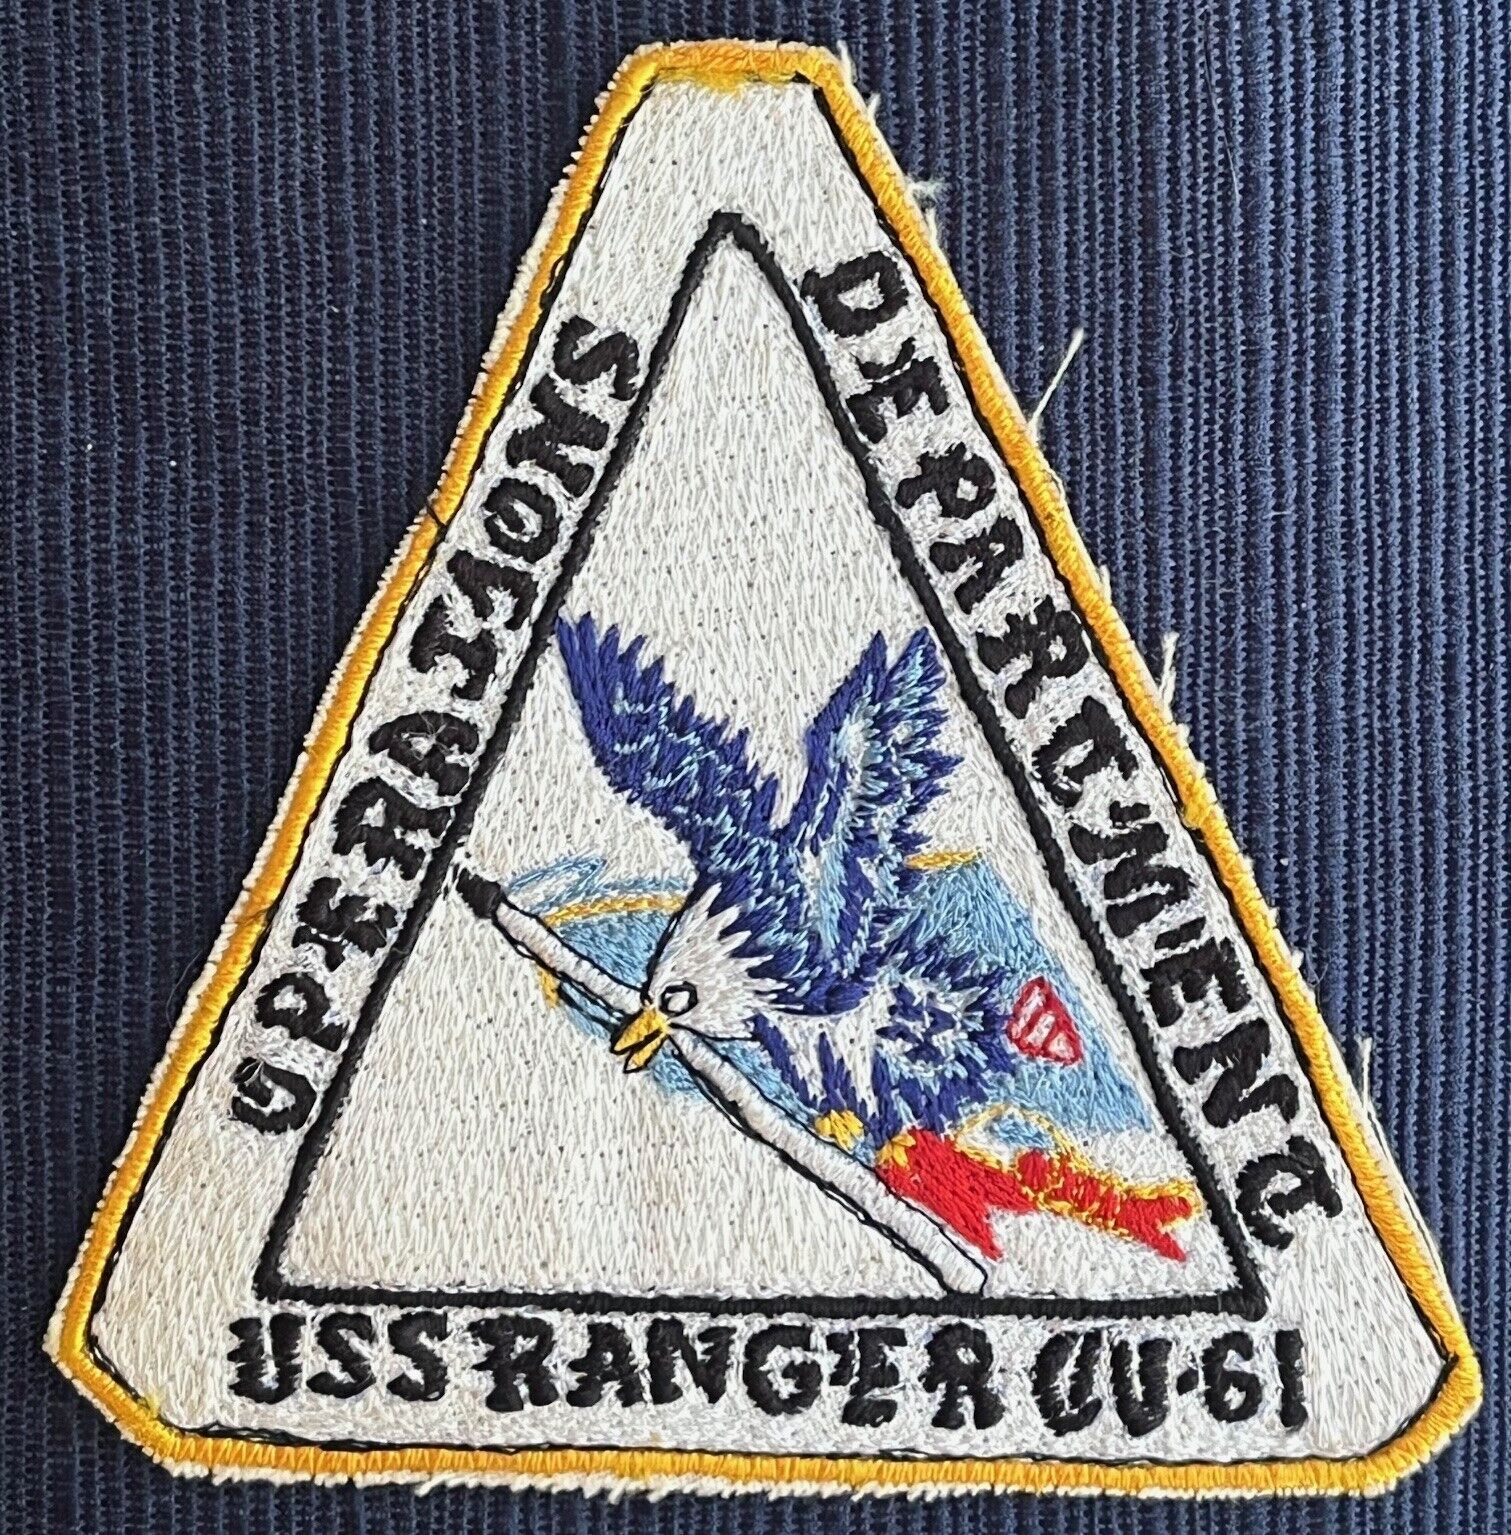 Original US Navy Vietnam War era Operations Department USS Ranger CV-61 Patch